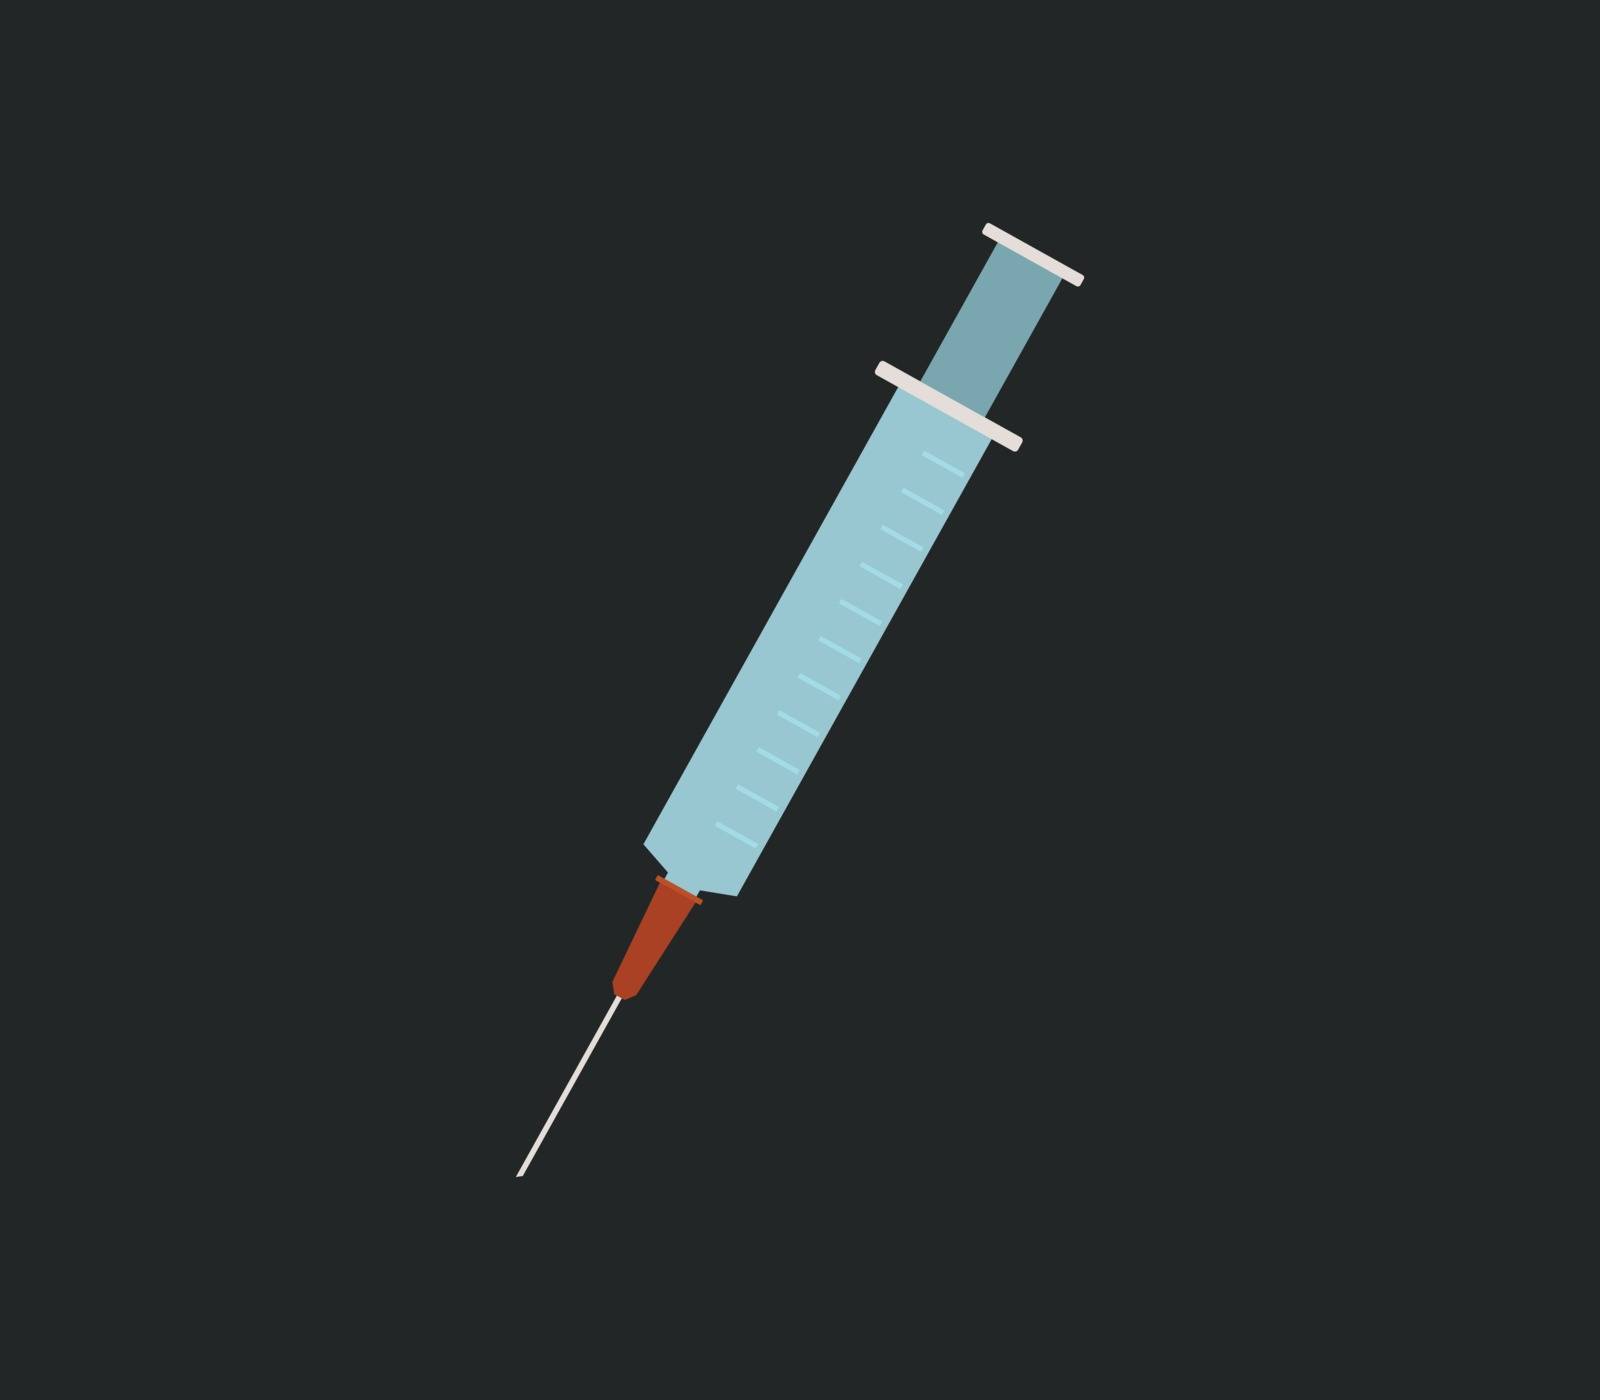 syringe icon by Mark1987